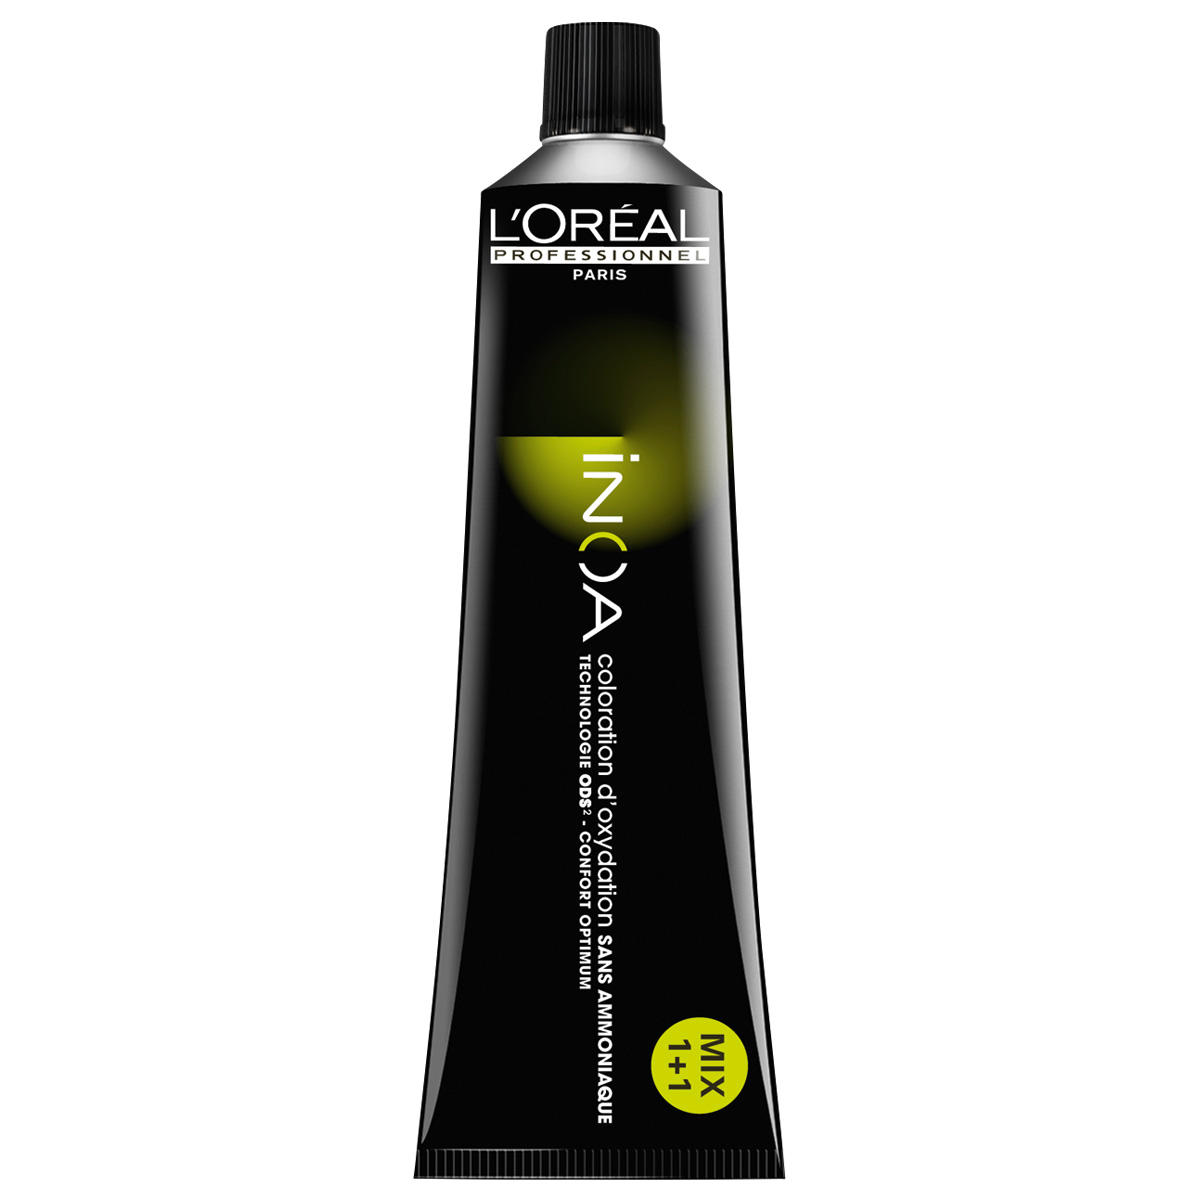 L'Oréal Professionnel Paris Coloration 7.0 Medium Blond Intensief, Tube 60 ml - 1